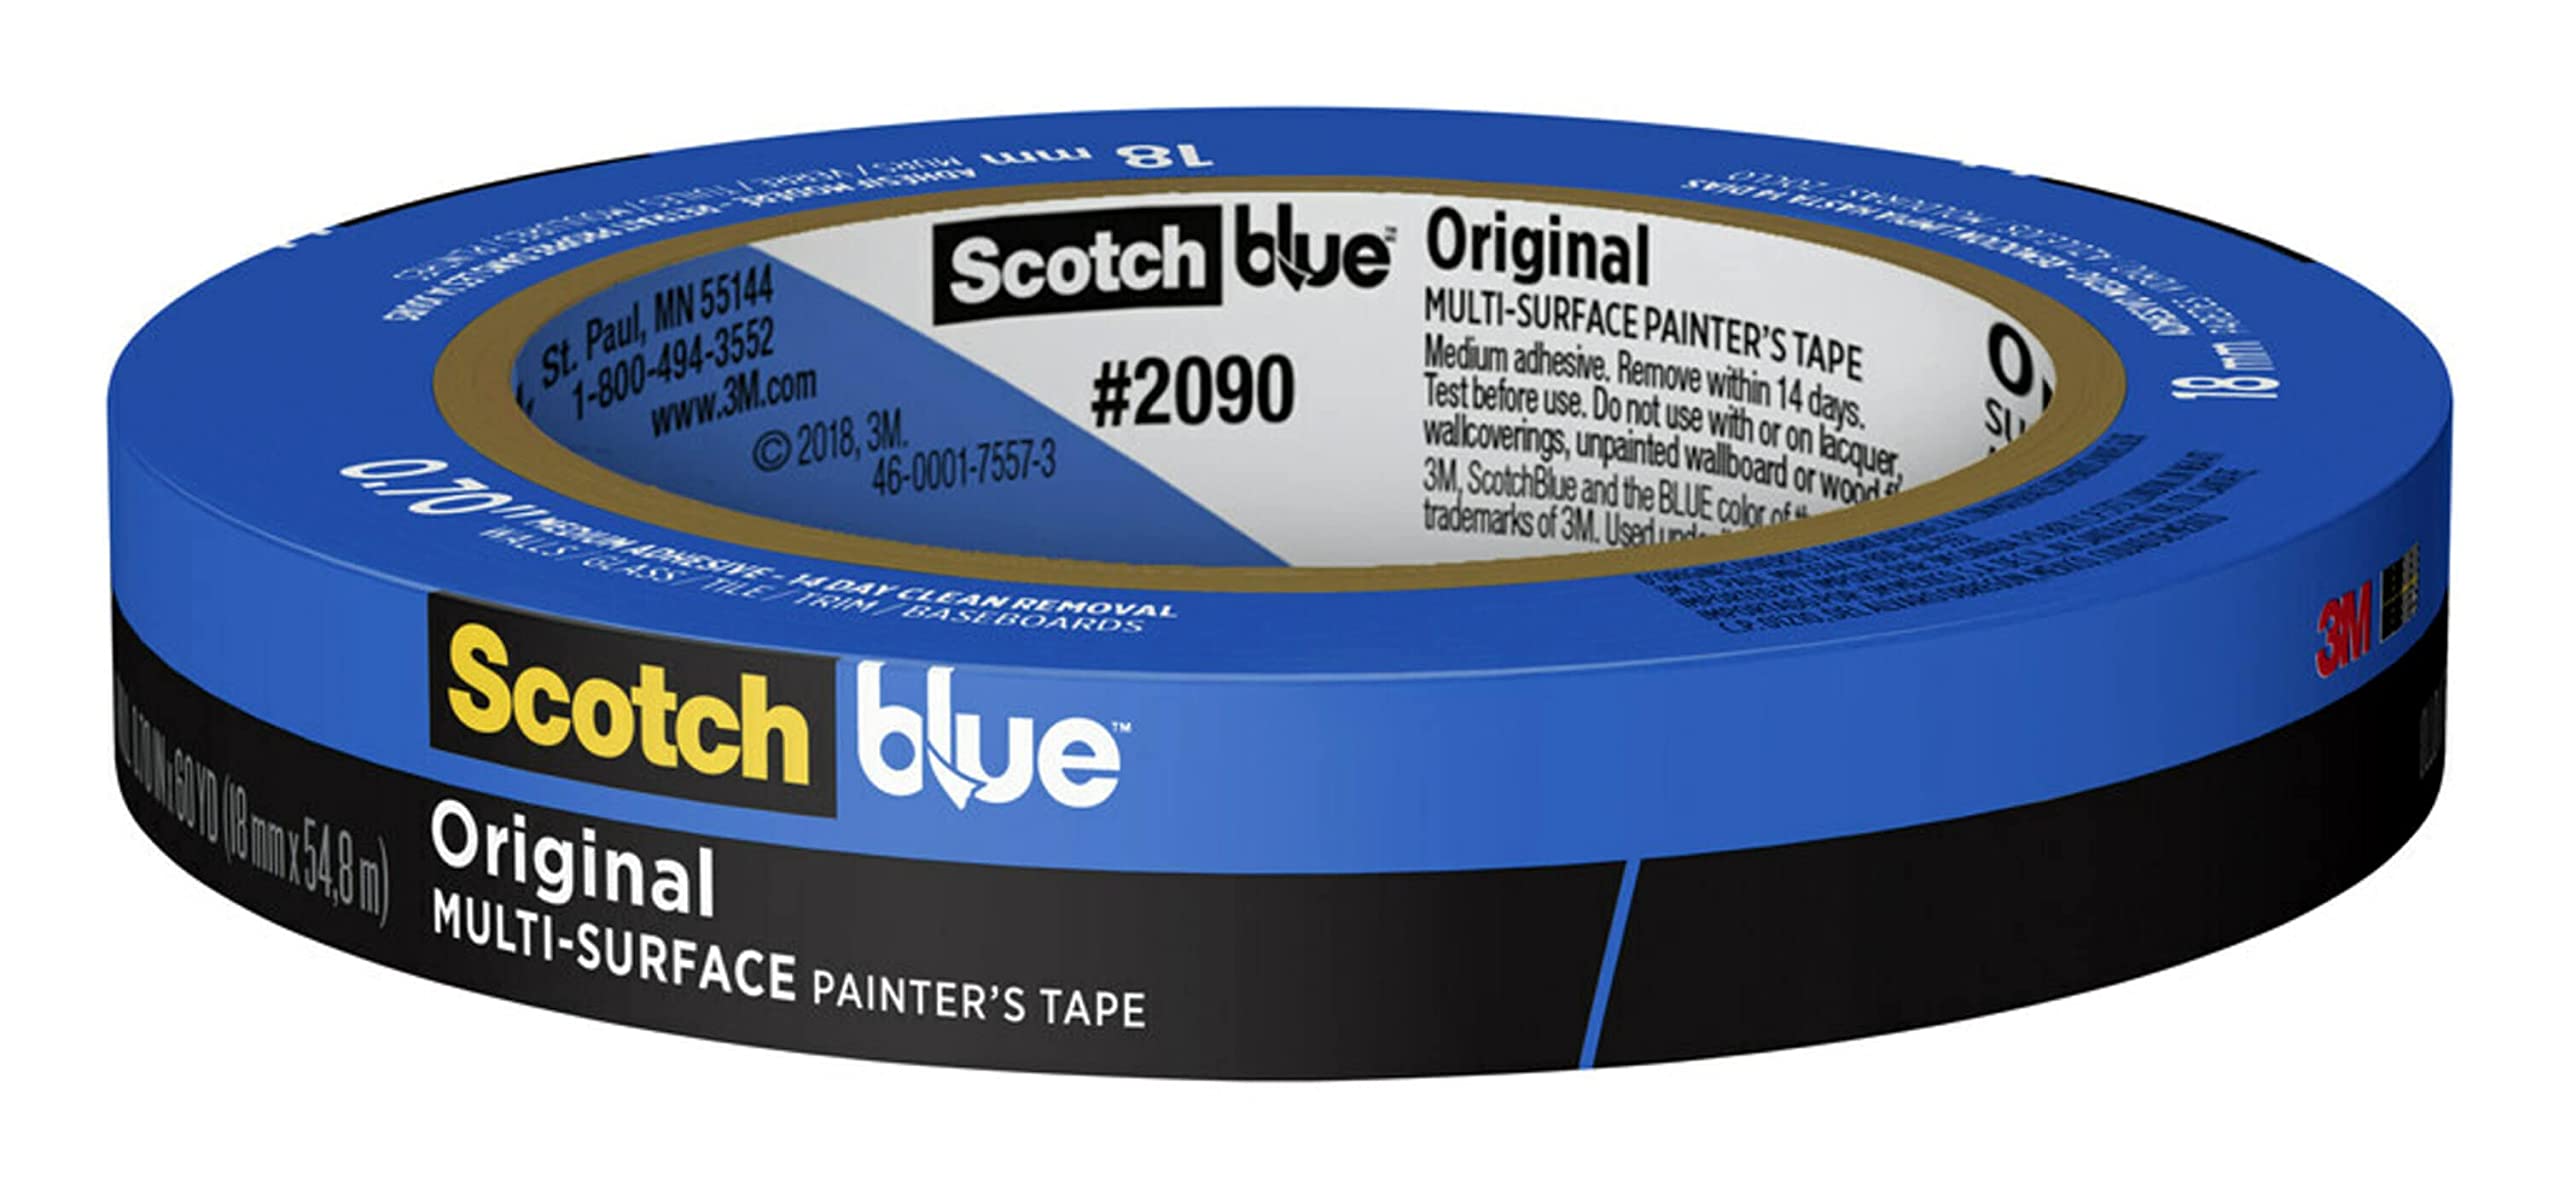 Scotch 蓝色原创多表面画家胶带